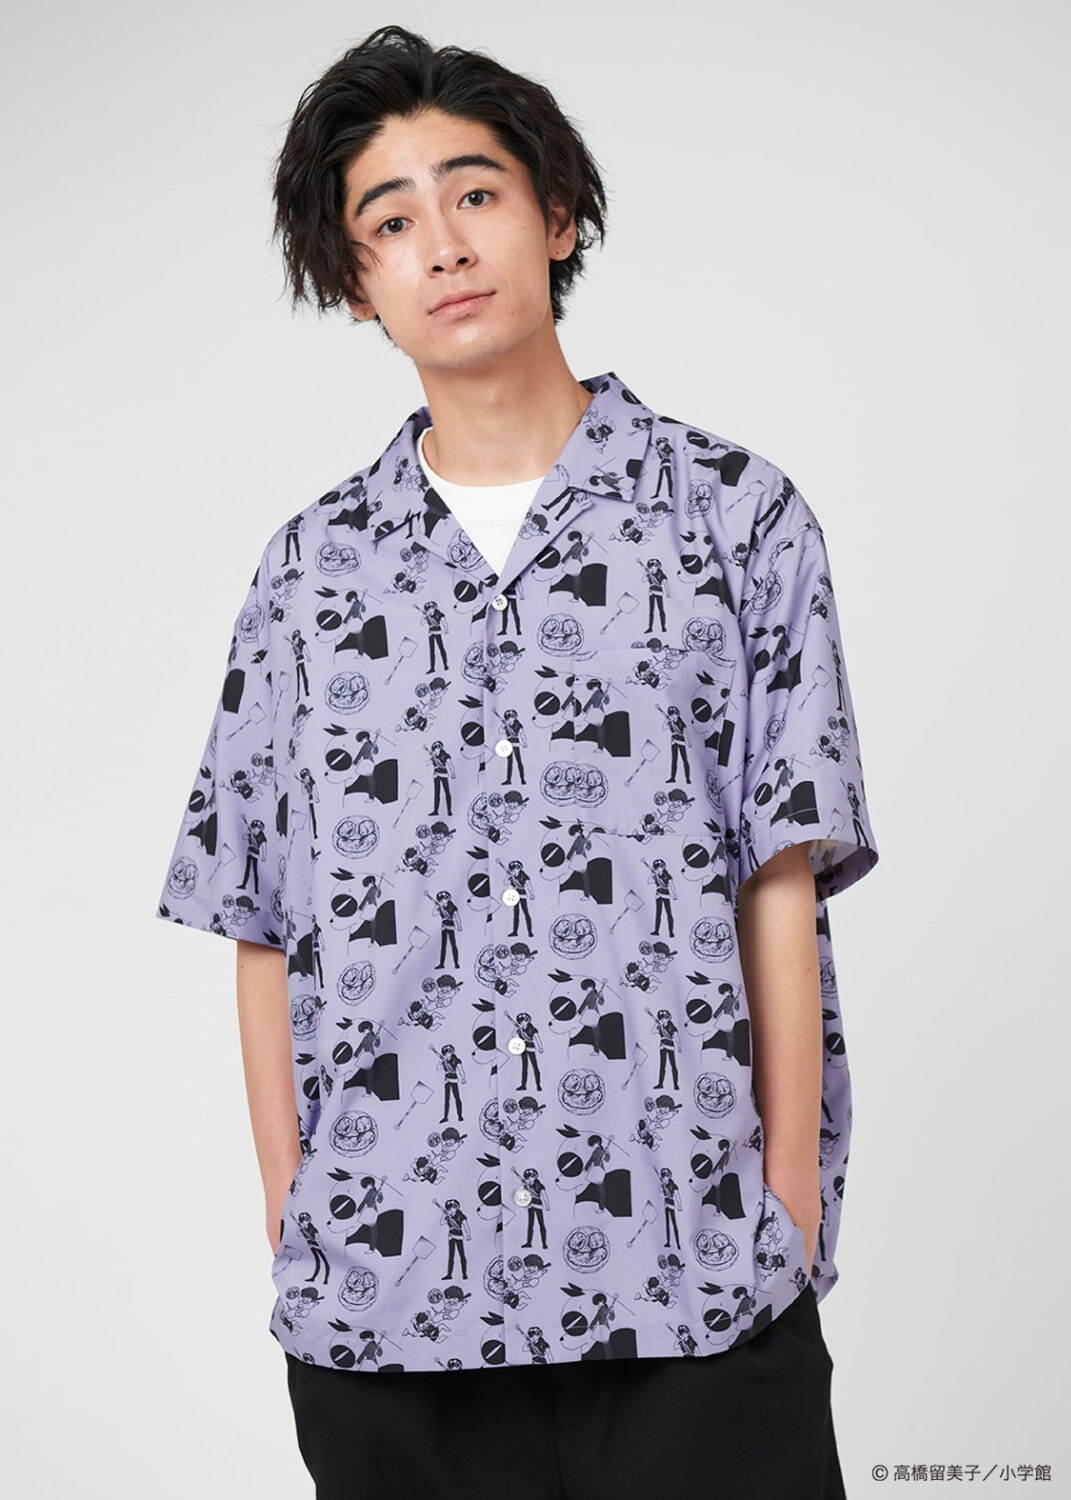 オープンカラーシャツ「呪泉郷 パターン」6,900円